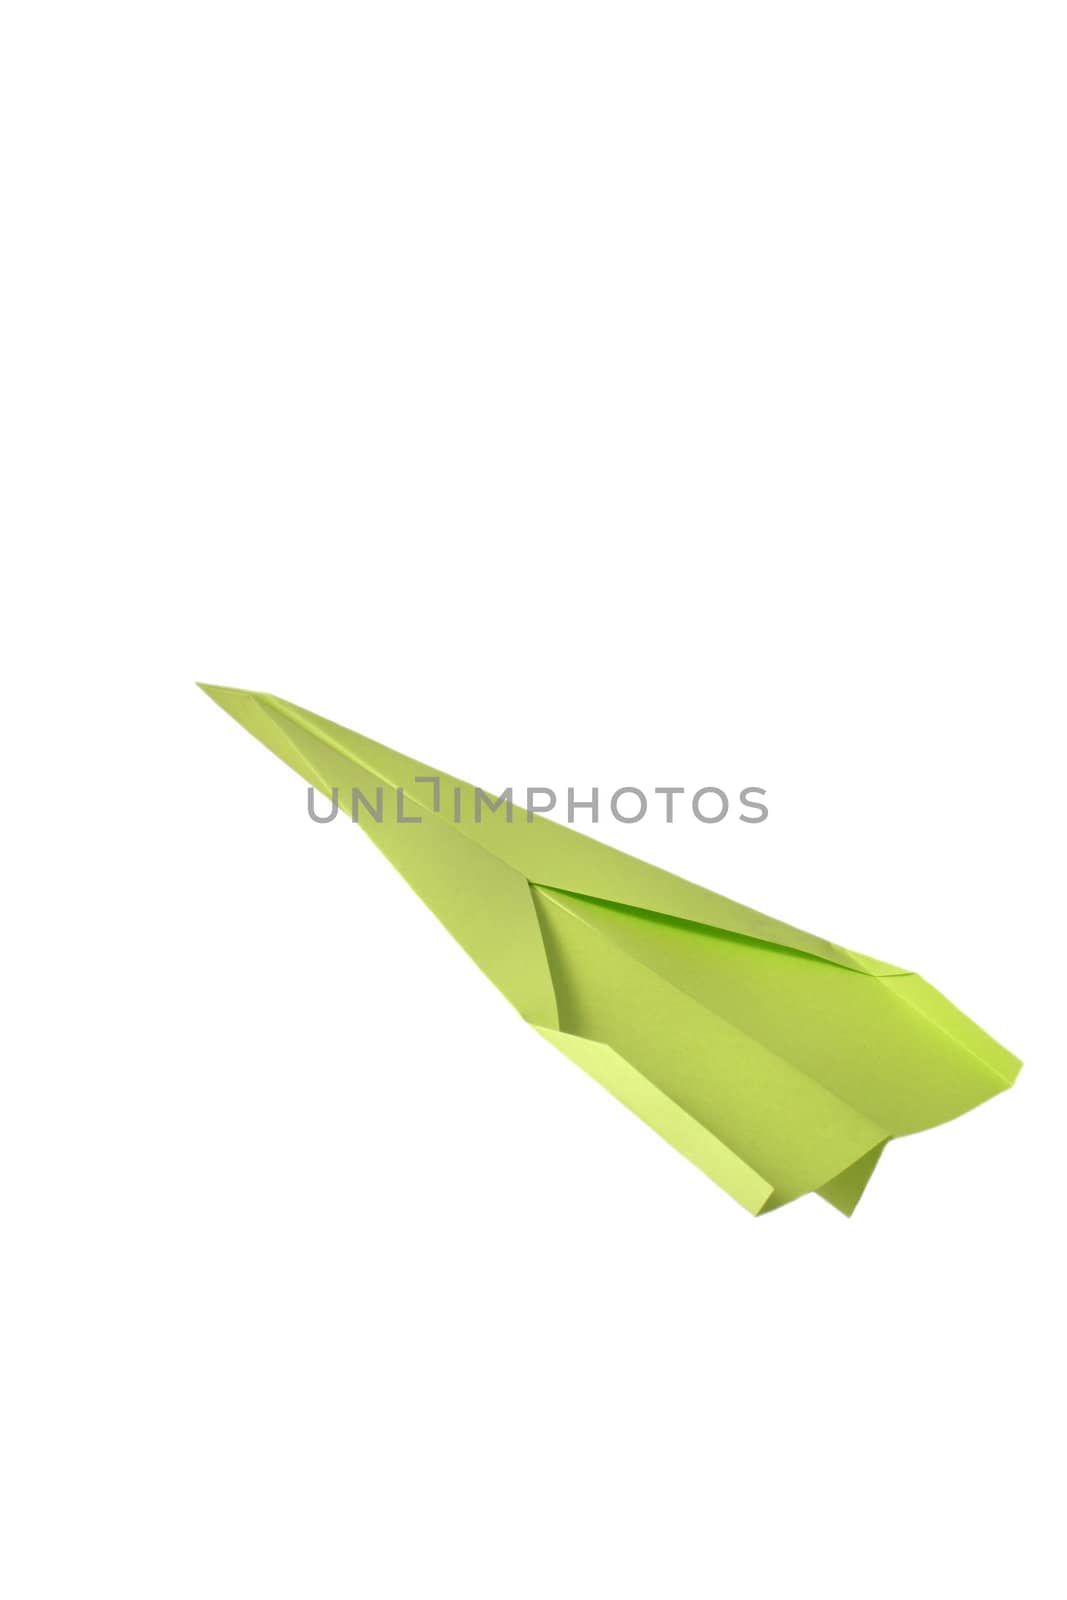 Paper aeroplane by kaarsten